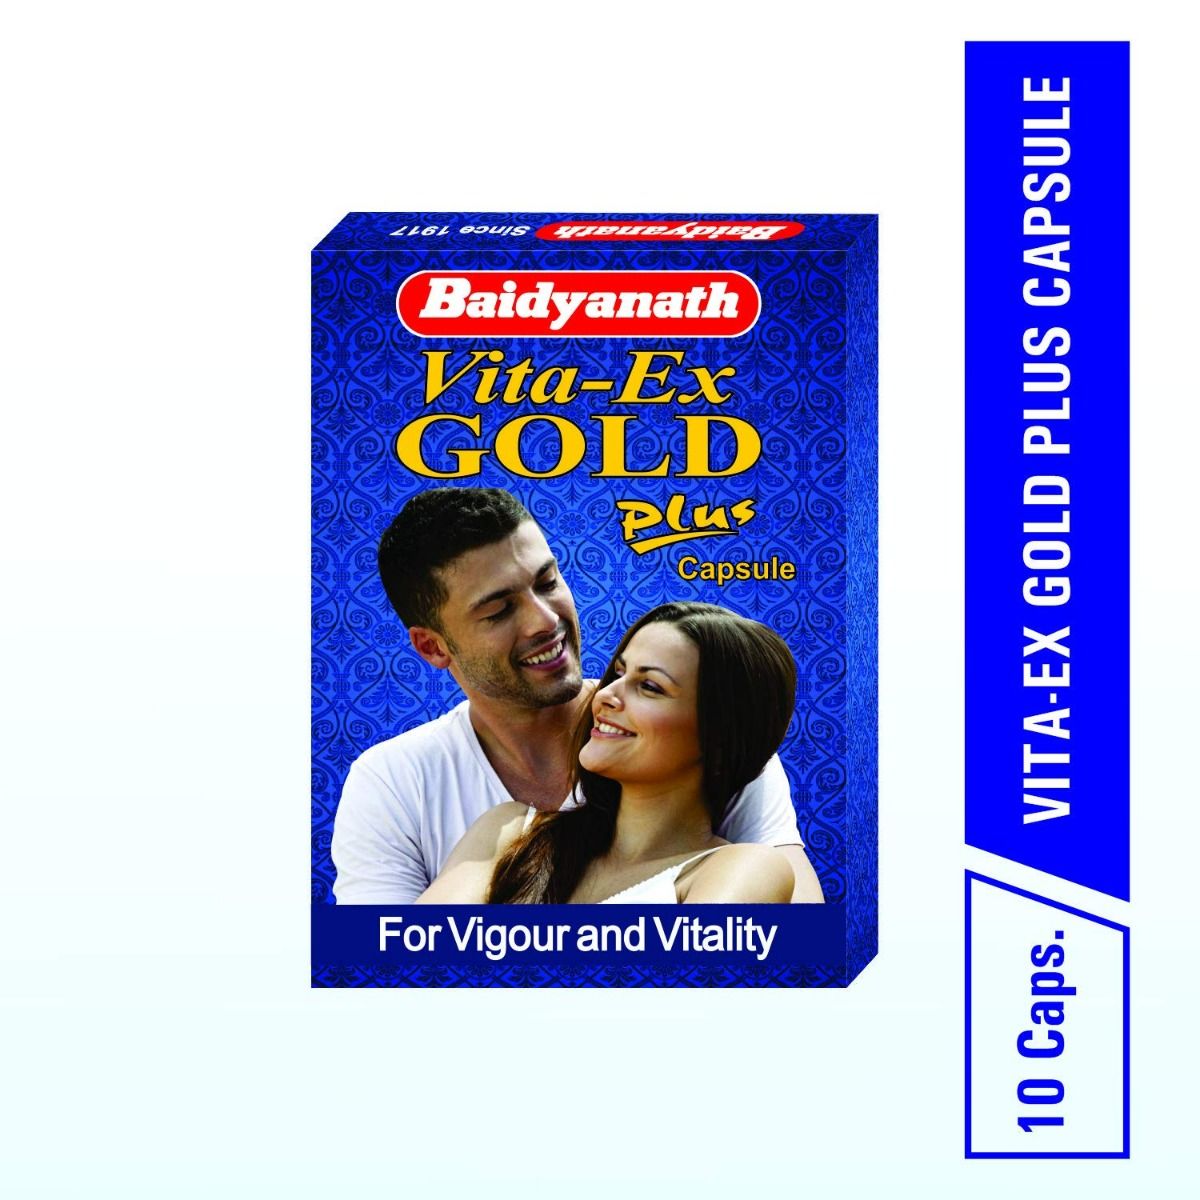 Baidyanath Vita-Ex Gold Plus, 10 Capsules, Pack of 1 